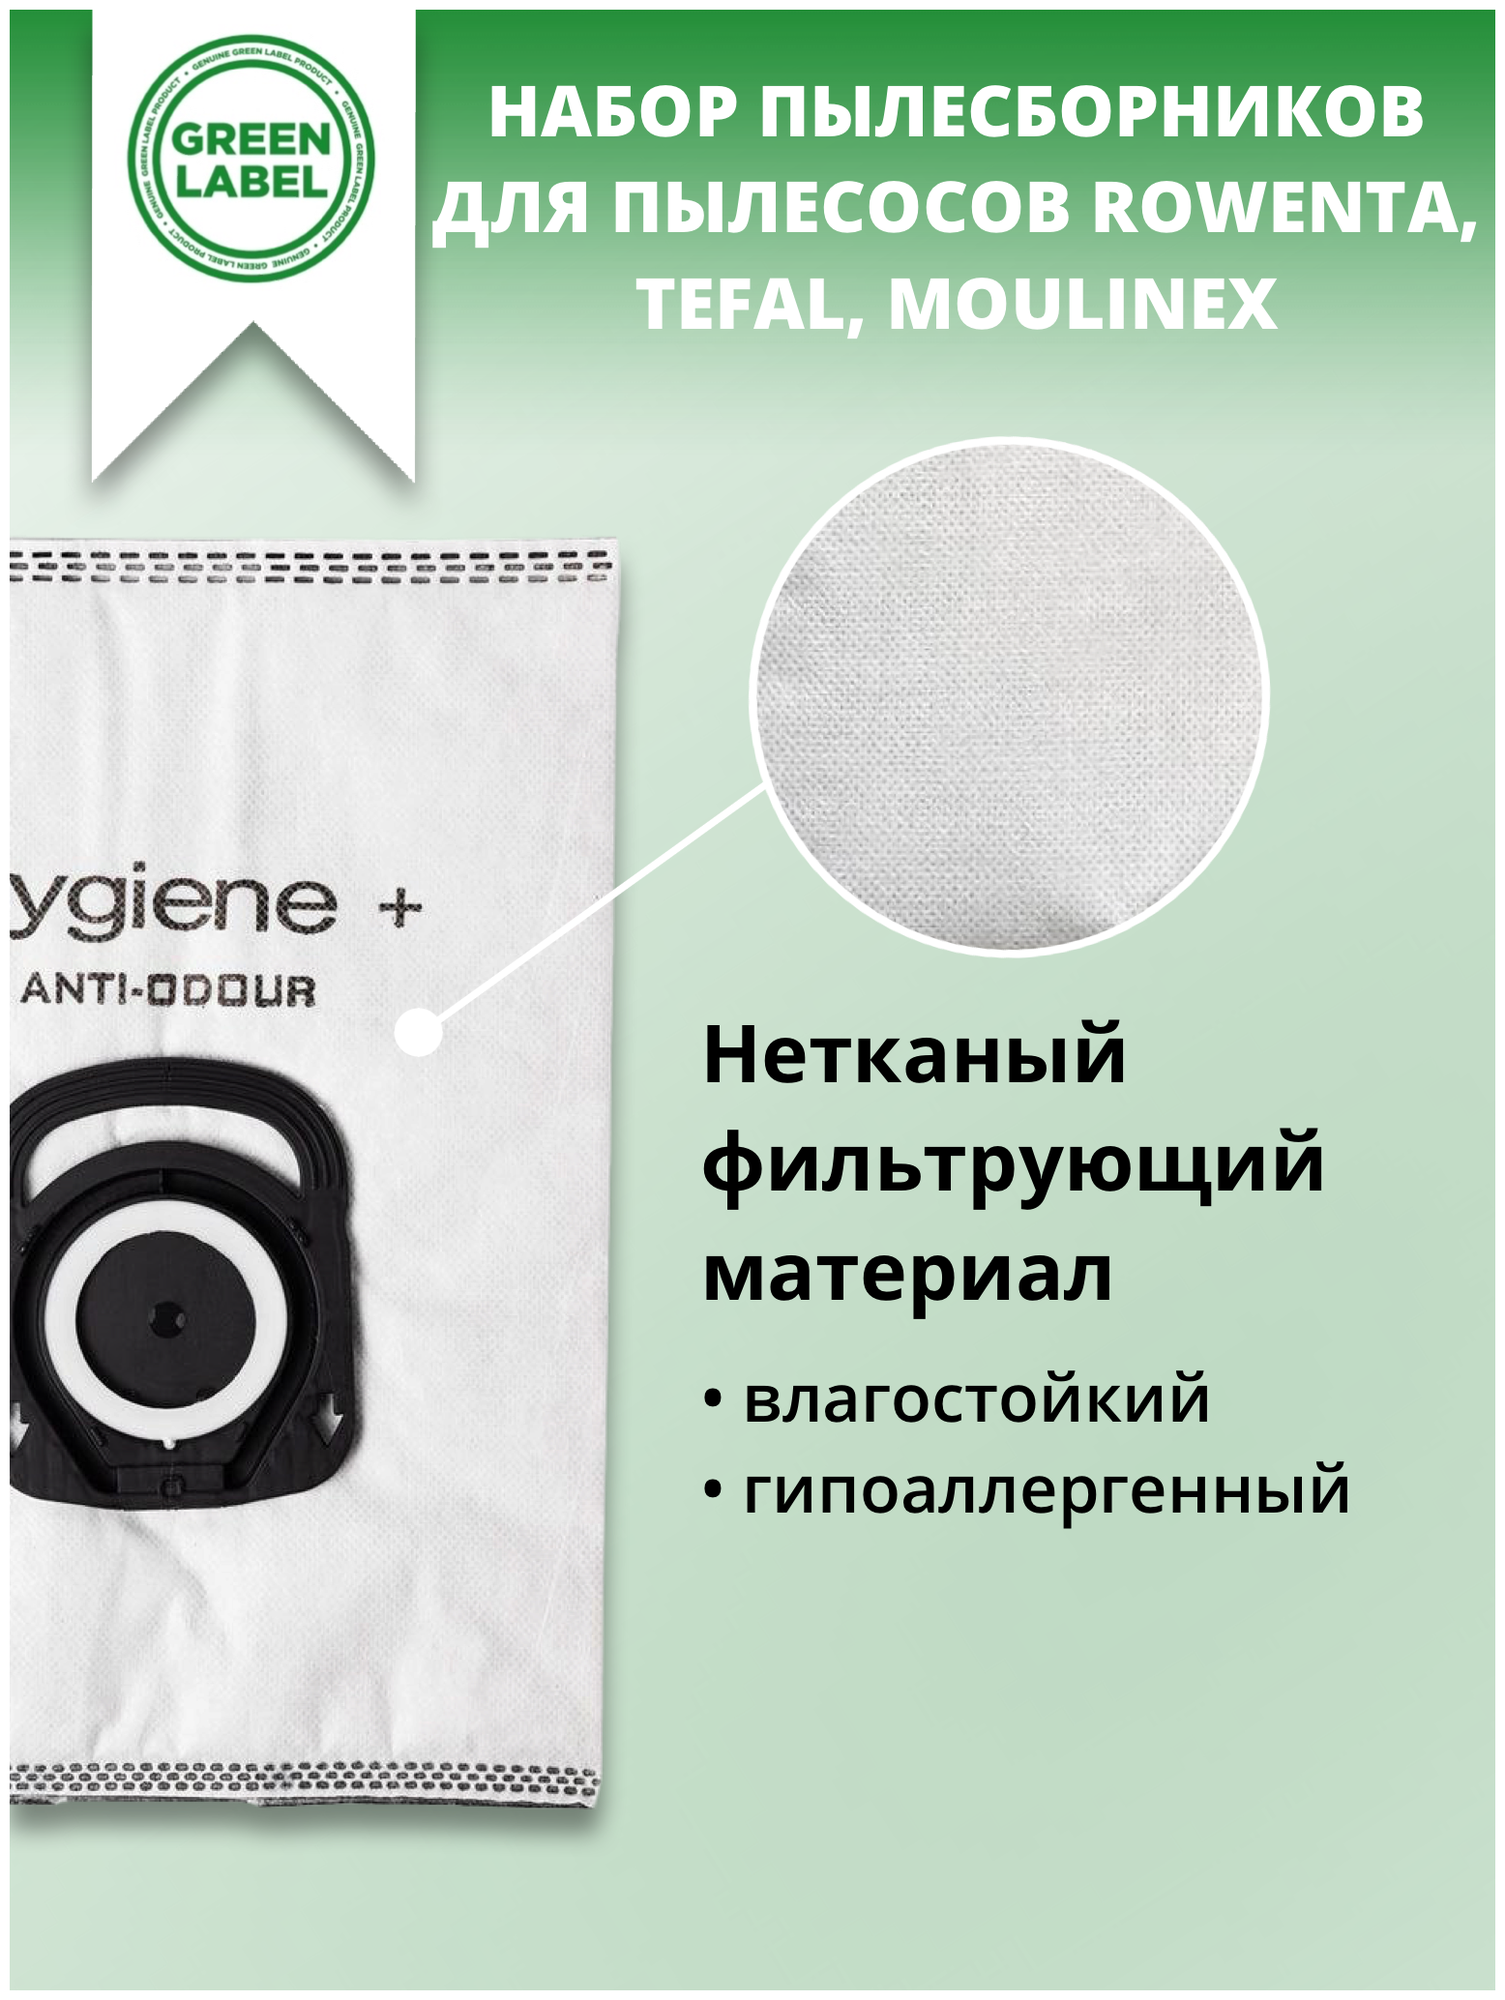 Green Label / Набор пылесборников ANTI- ODOUR ZR200720 с нейтрализацией запаха для Rowenta, Tefal, Moulinex (5 шт.), мешки для пылесоса